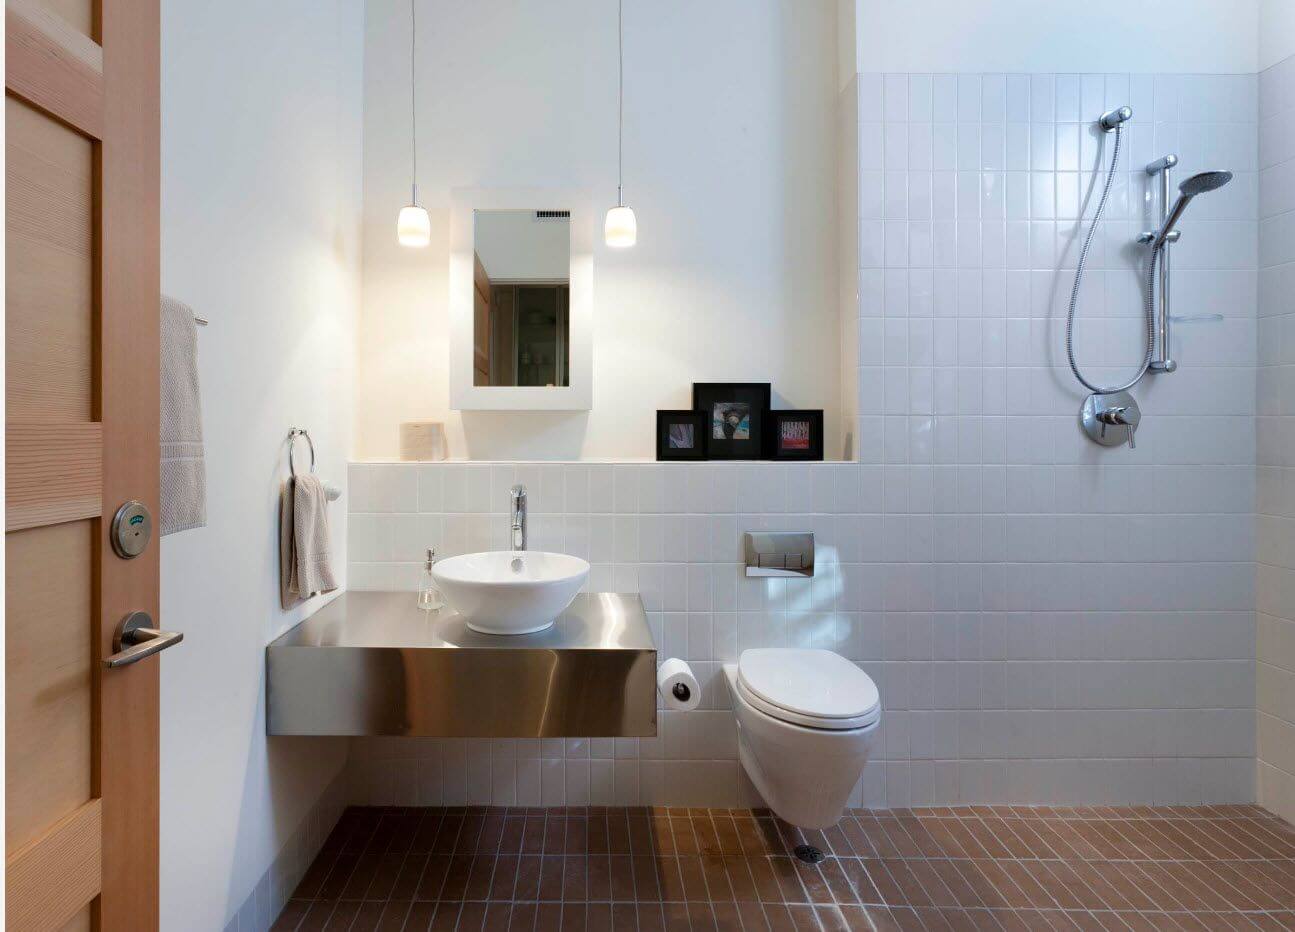 белая керамическая плитка в интерьере ванной комнаты